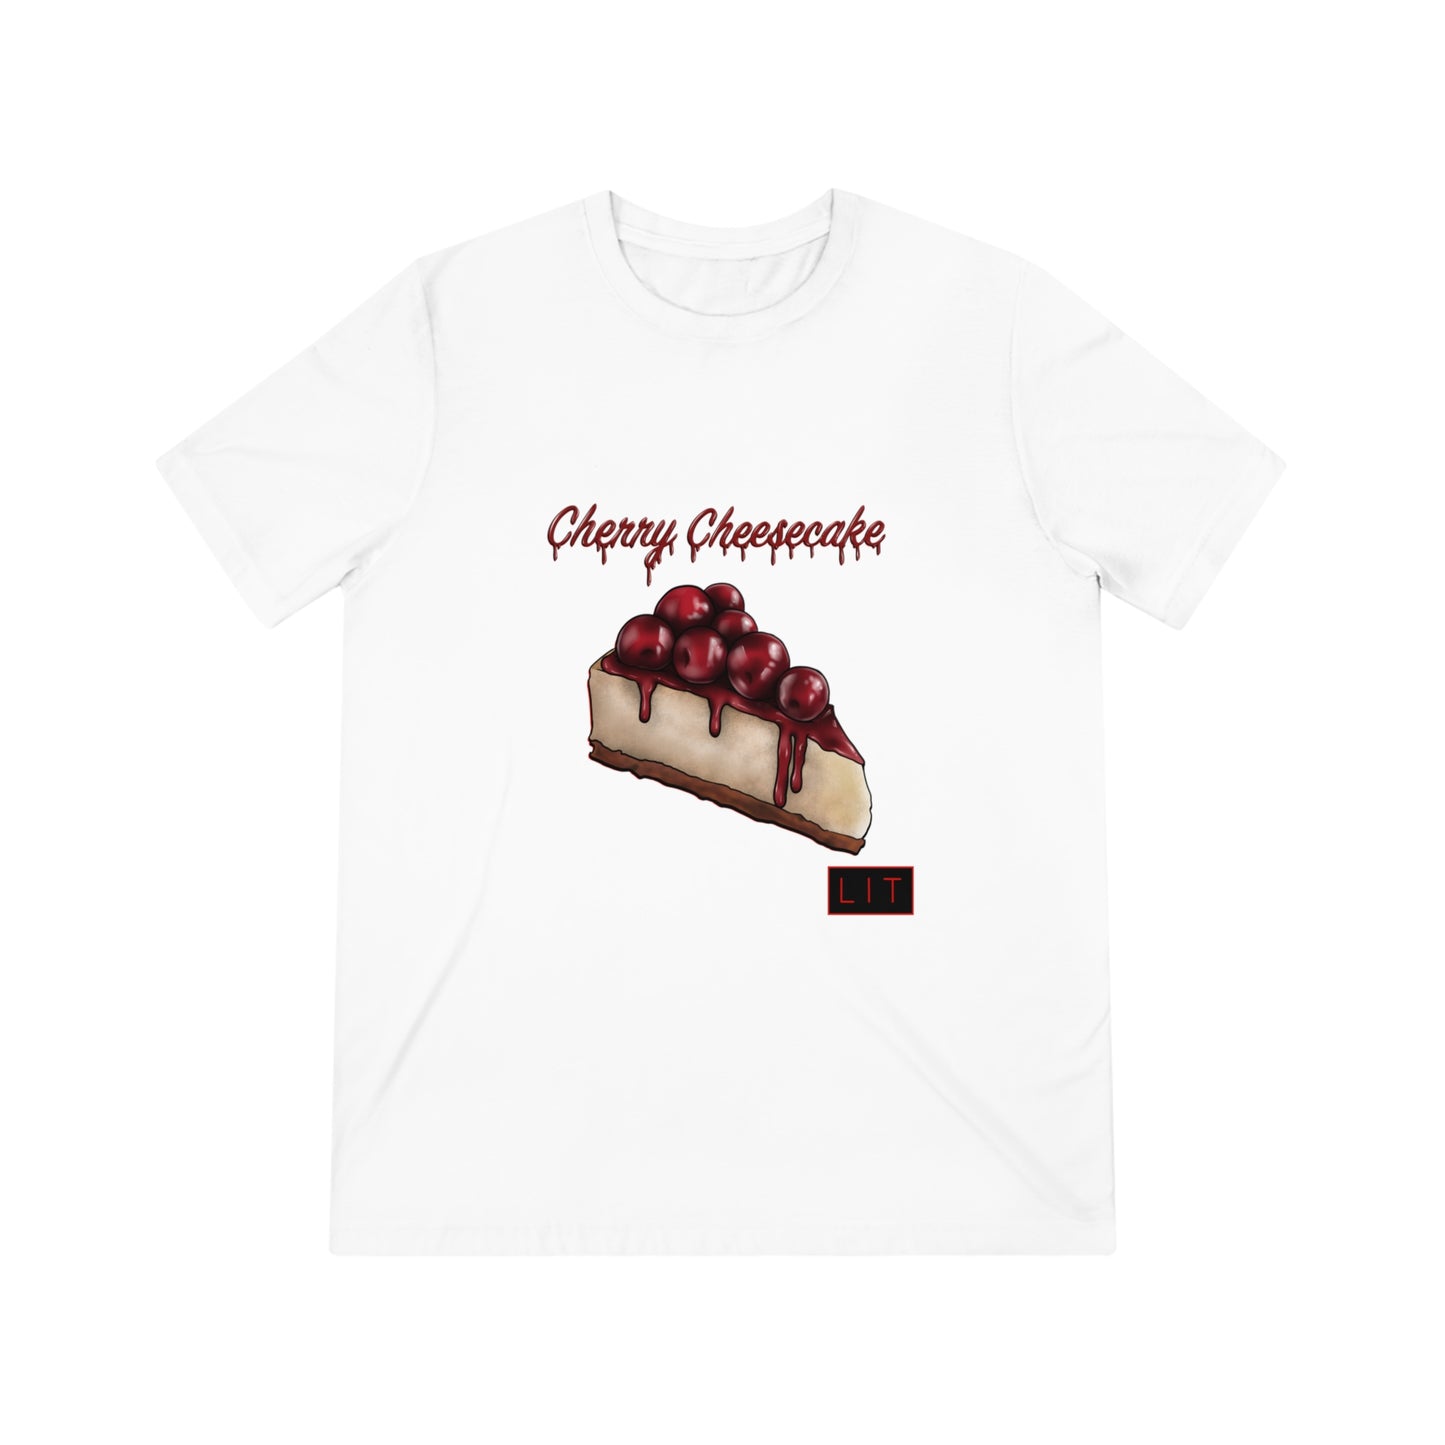 Cherry Cheesecake - T-Shirt